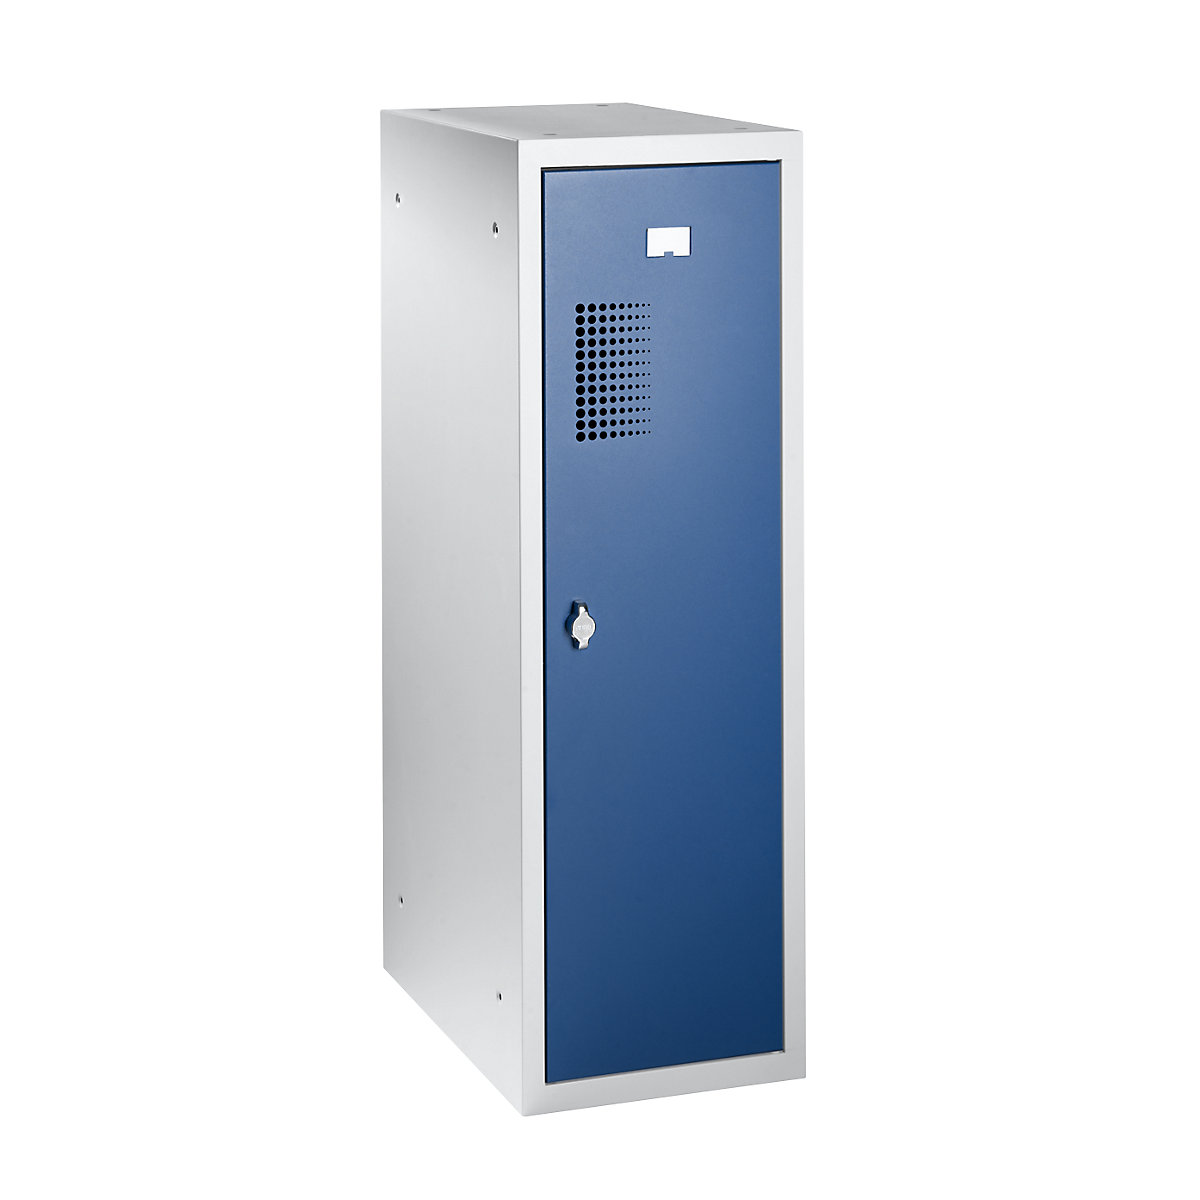 EUROKRAFTbasic – Kombinovaná skriňa s uzamykateľnými priehradkami, samostatný modul, v x š x h 1000 x 300 x 500 mm, so zariadením pre visiaci zámok, korpus svetlošedá / dvere enciánová modrá